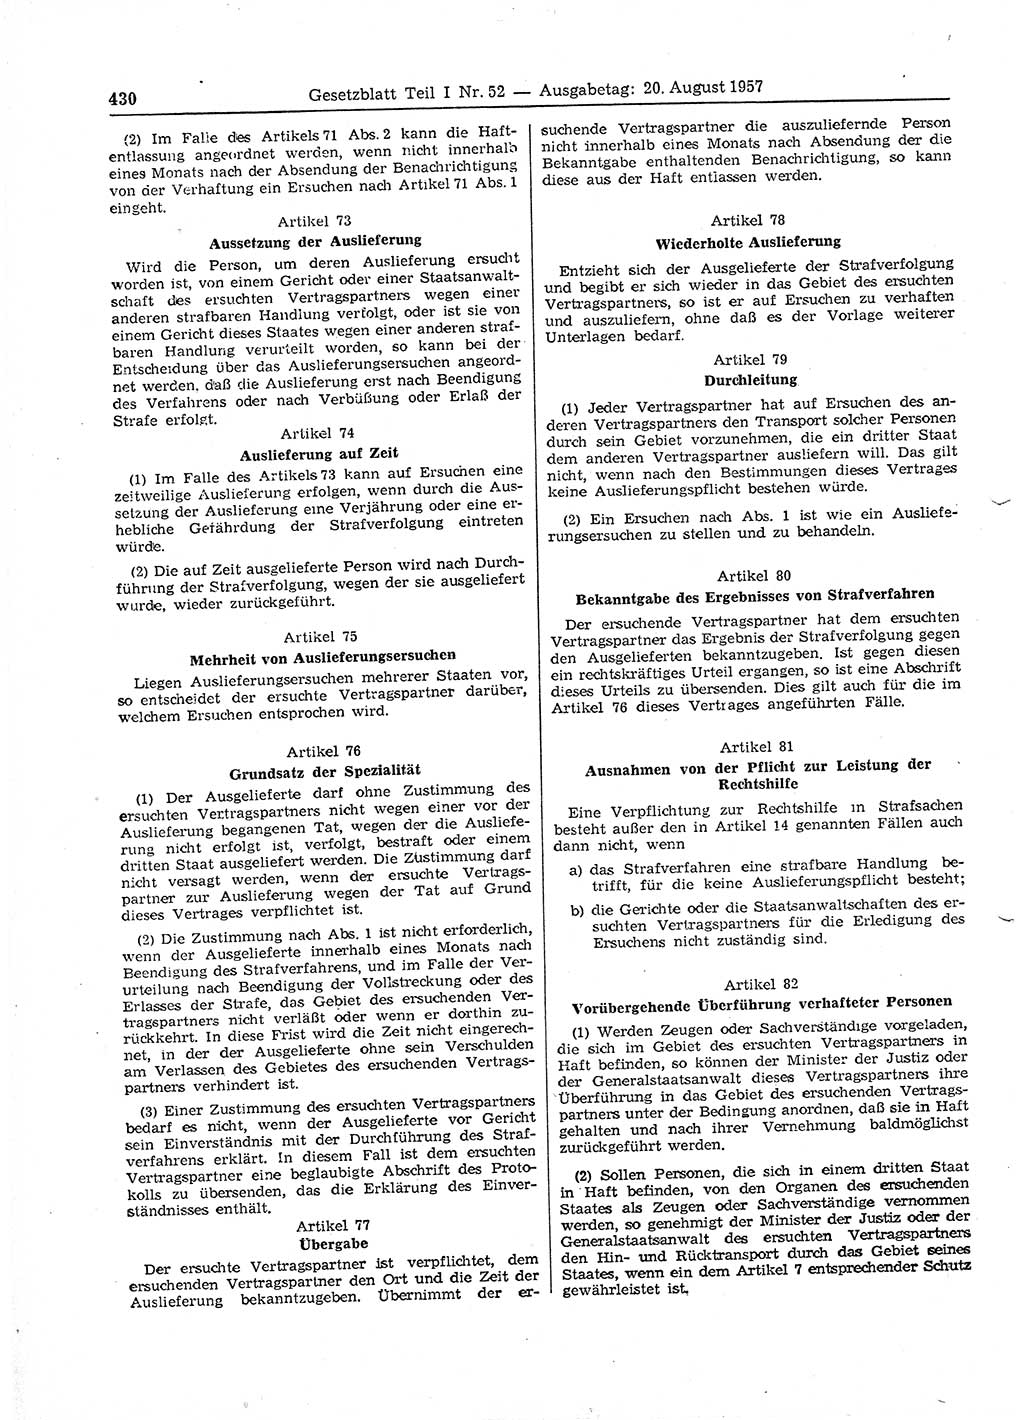 Gesetzblatt (GBl.) der Deutschen Demokratischen Republik (DDR) Teil Ⅰ 1957, Seite 430 (GBl. DDR Ⅰ 1957, S. 430)